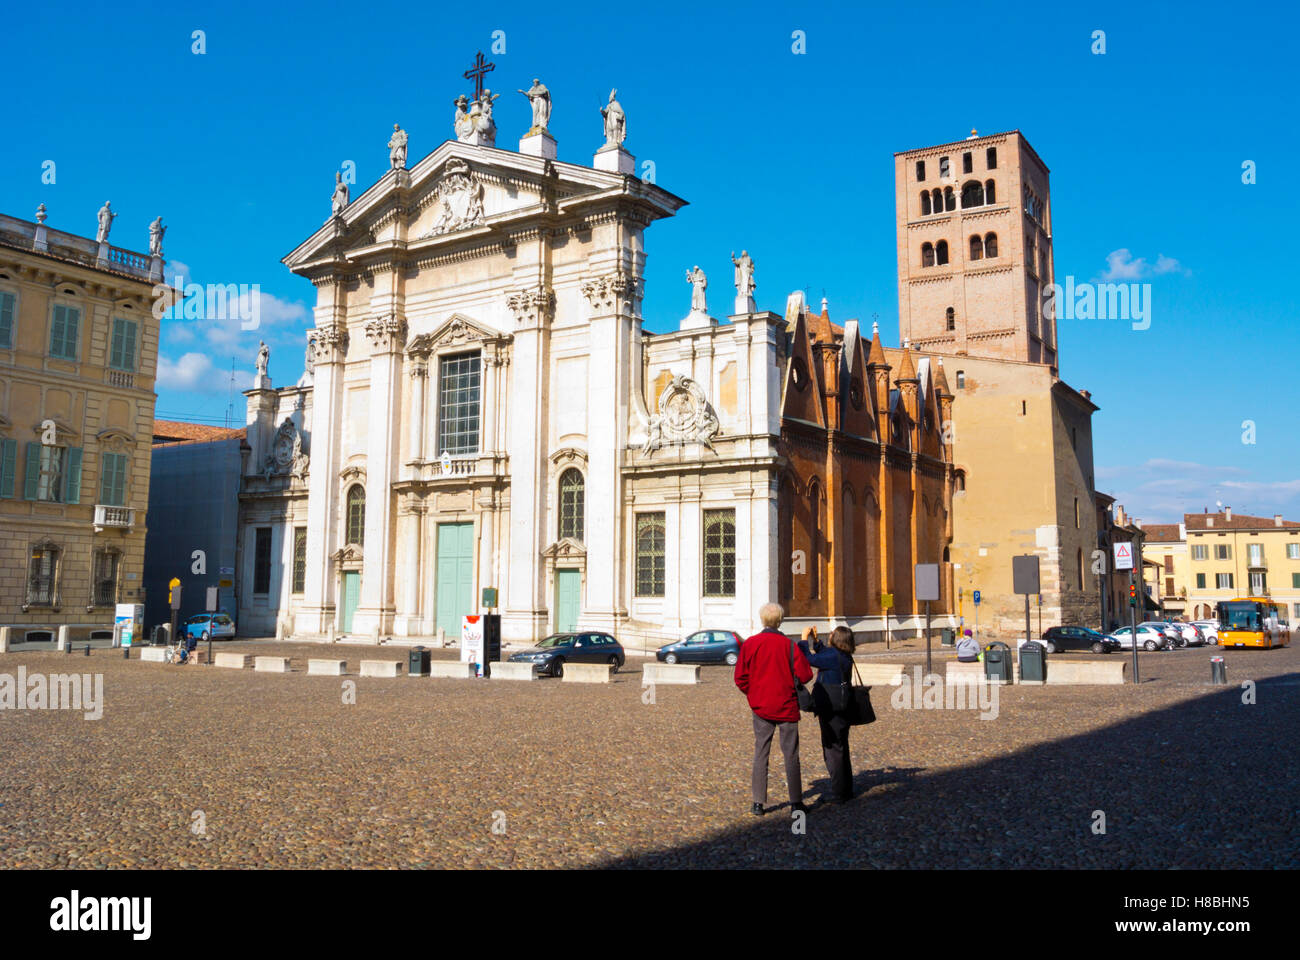 Duomo, église cathédrale, Piazza Sordello, Mantoue, Lombardie, Italie Banque D'Images